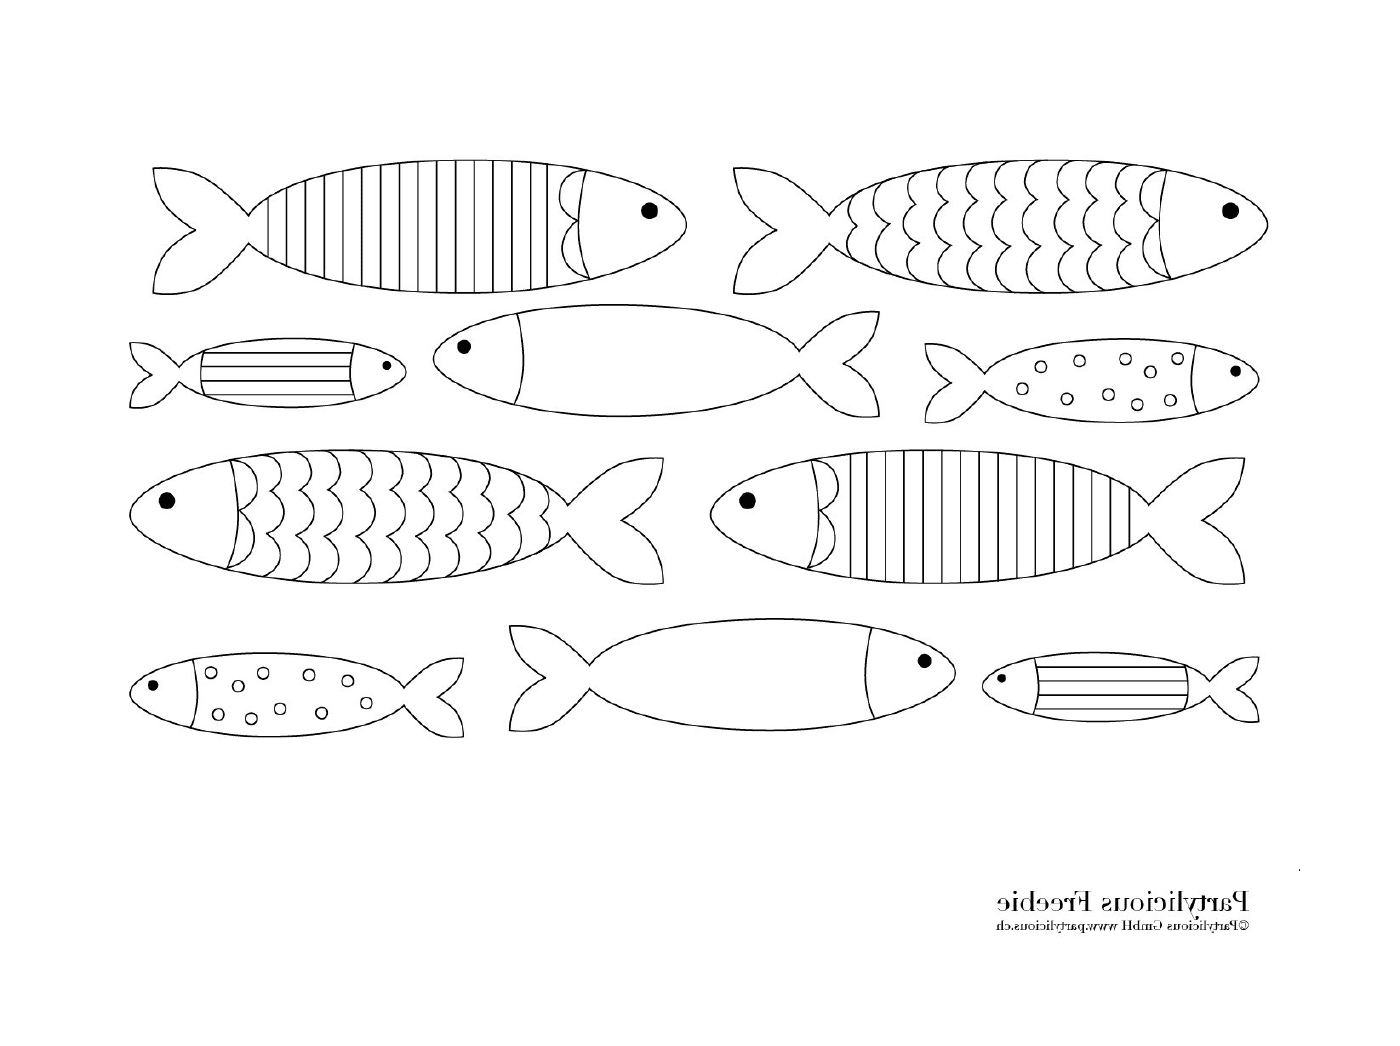  العديد من الأسماك المختلفة في الصفحة 